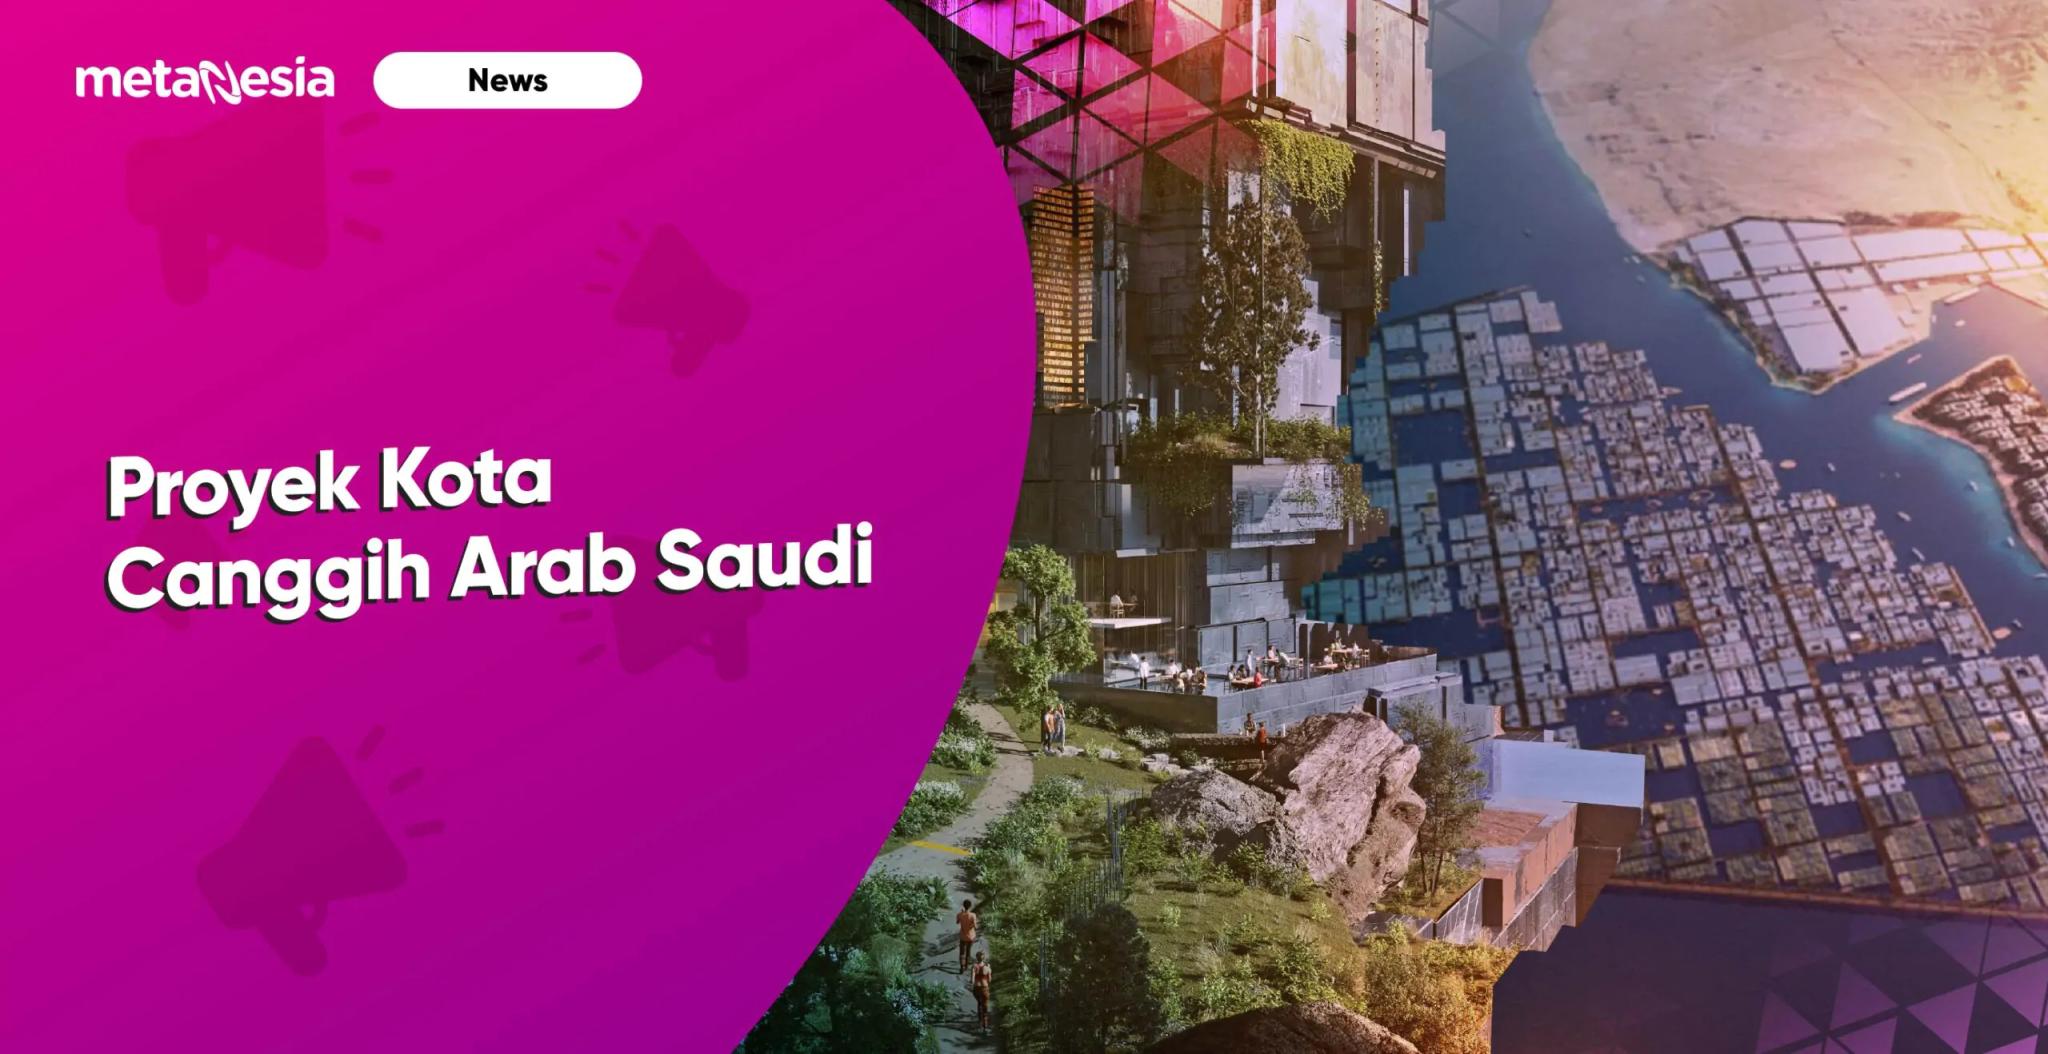 Menilik Proyek Kota Canggih Arab Saudi, Kota Masa Depan?